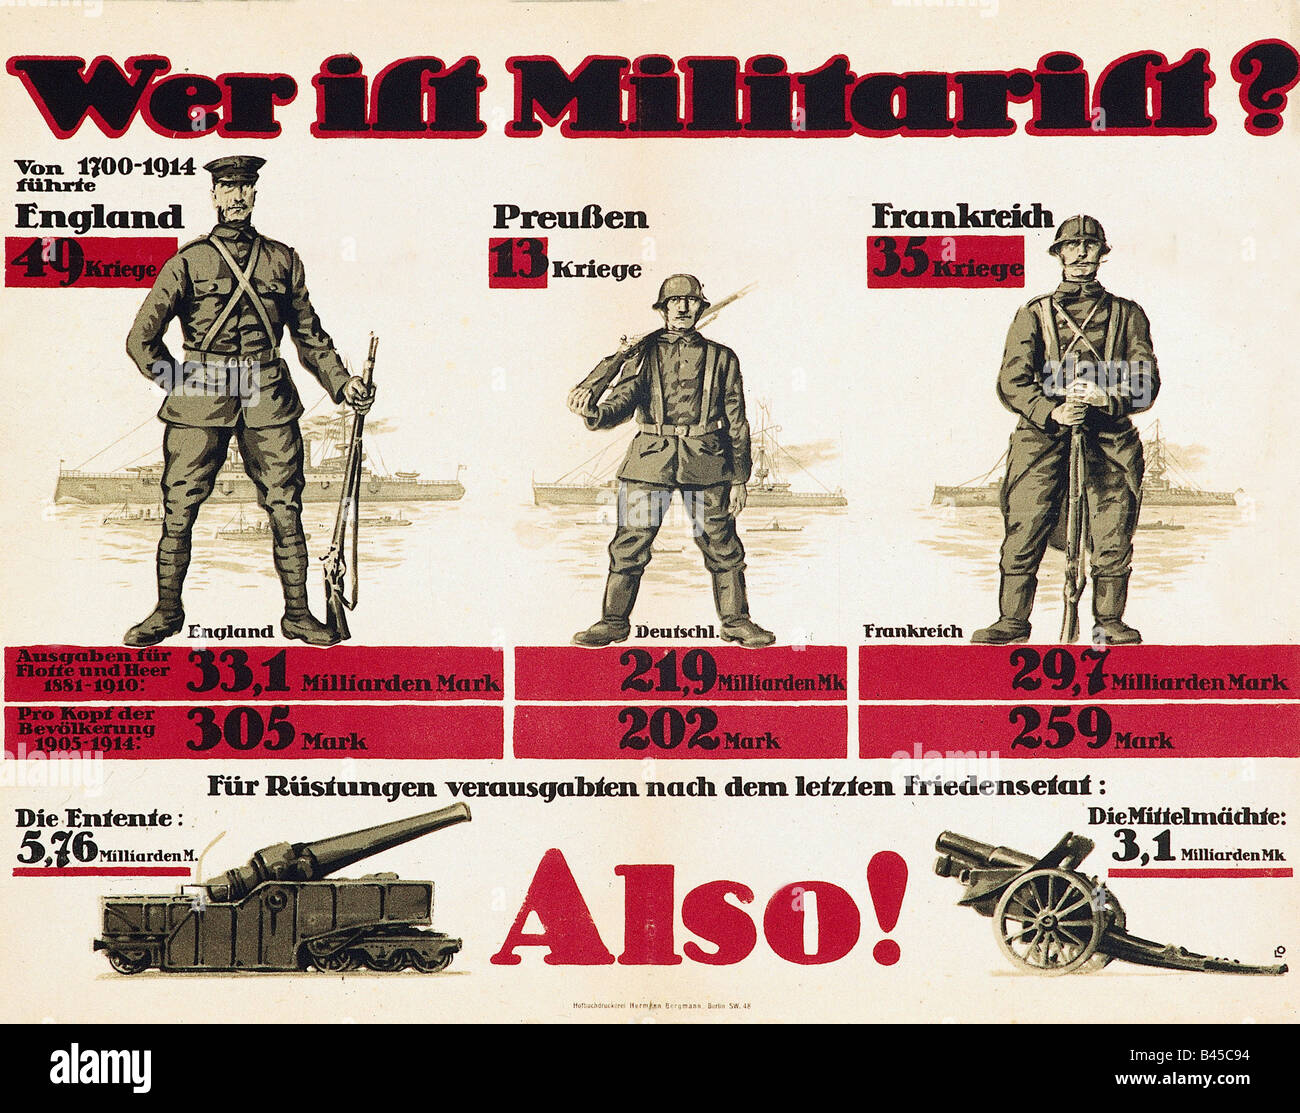 Événements, première Guerre mondiale / première Guerre mondiale, propagande, 'Wer ist Militarist?' (Qui est militariste?), comparaison des activités belligérantes prussiennes, anglaises et françaises de 1700 à 1914, Allemagne, vers 1916, Banque D'Images